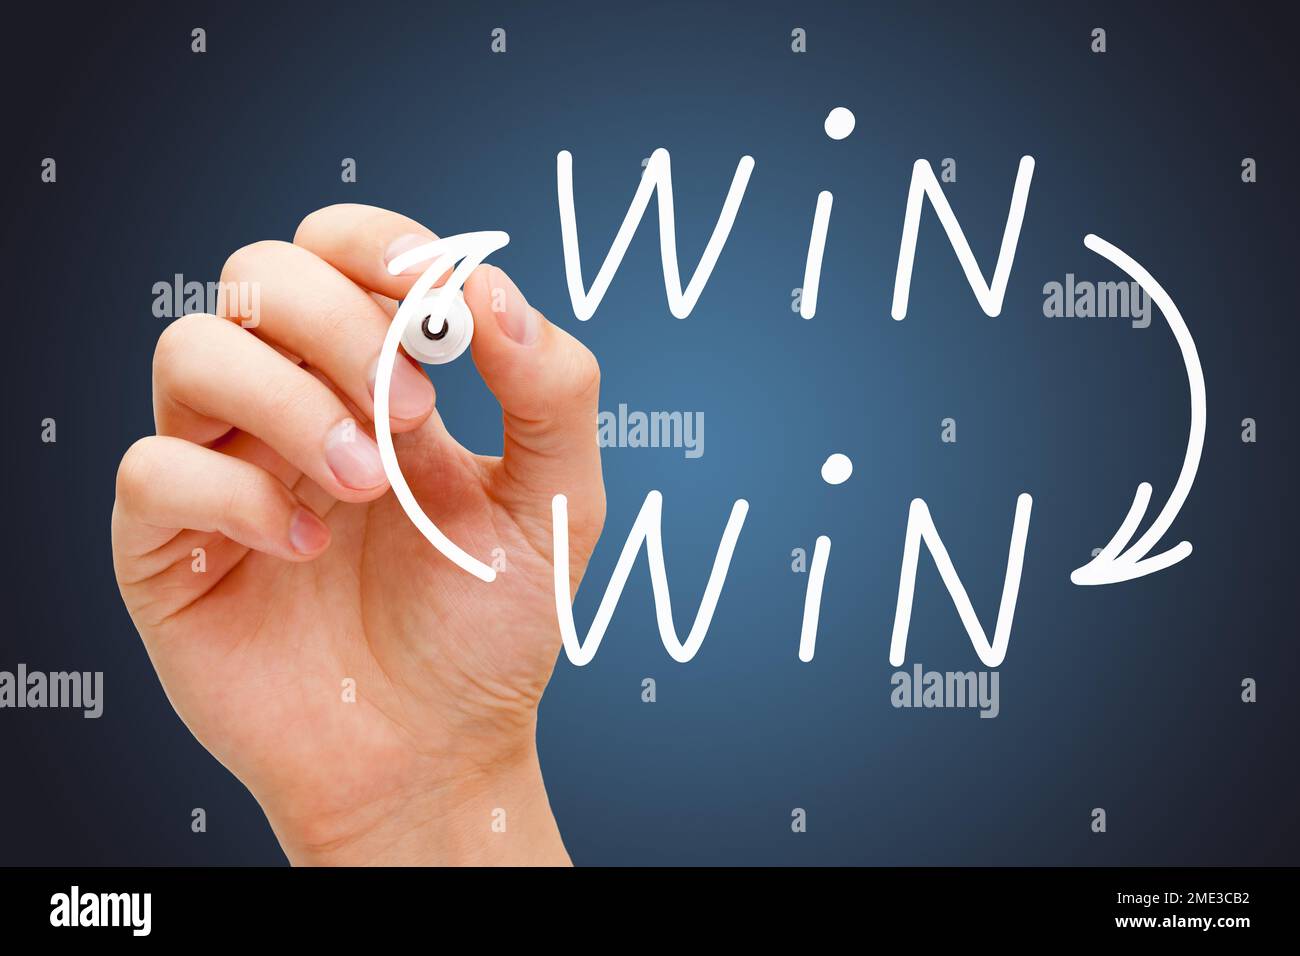 Handschriftliches Geschäftskonzept für die Win-Win-Situation mit weißem Marker auf dunkelblauem Hintergrund. Stockfoto